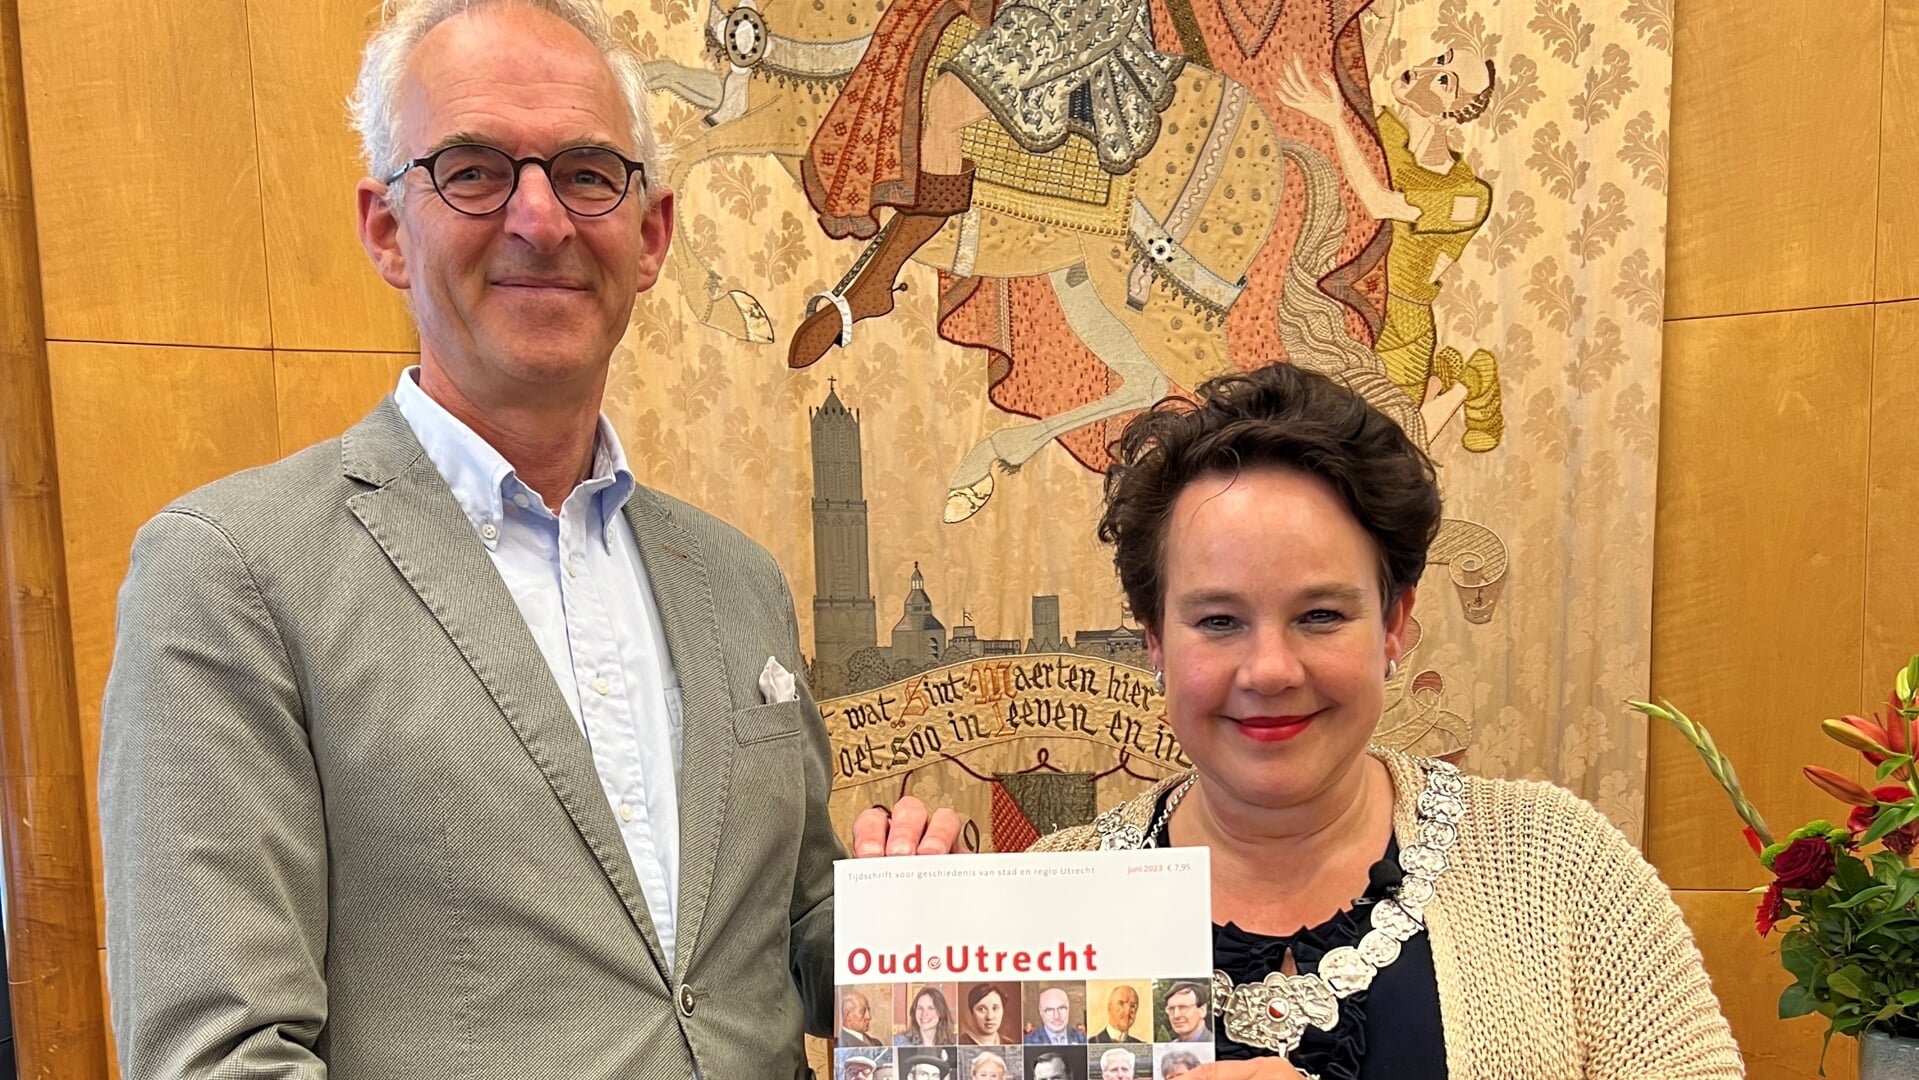 Burgemeester van Utrecht Sharon Dijksma en voorzitter Oud-Utrecht Dick de Jong